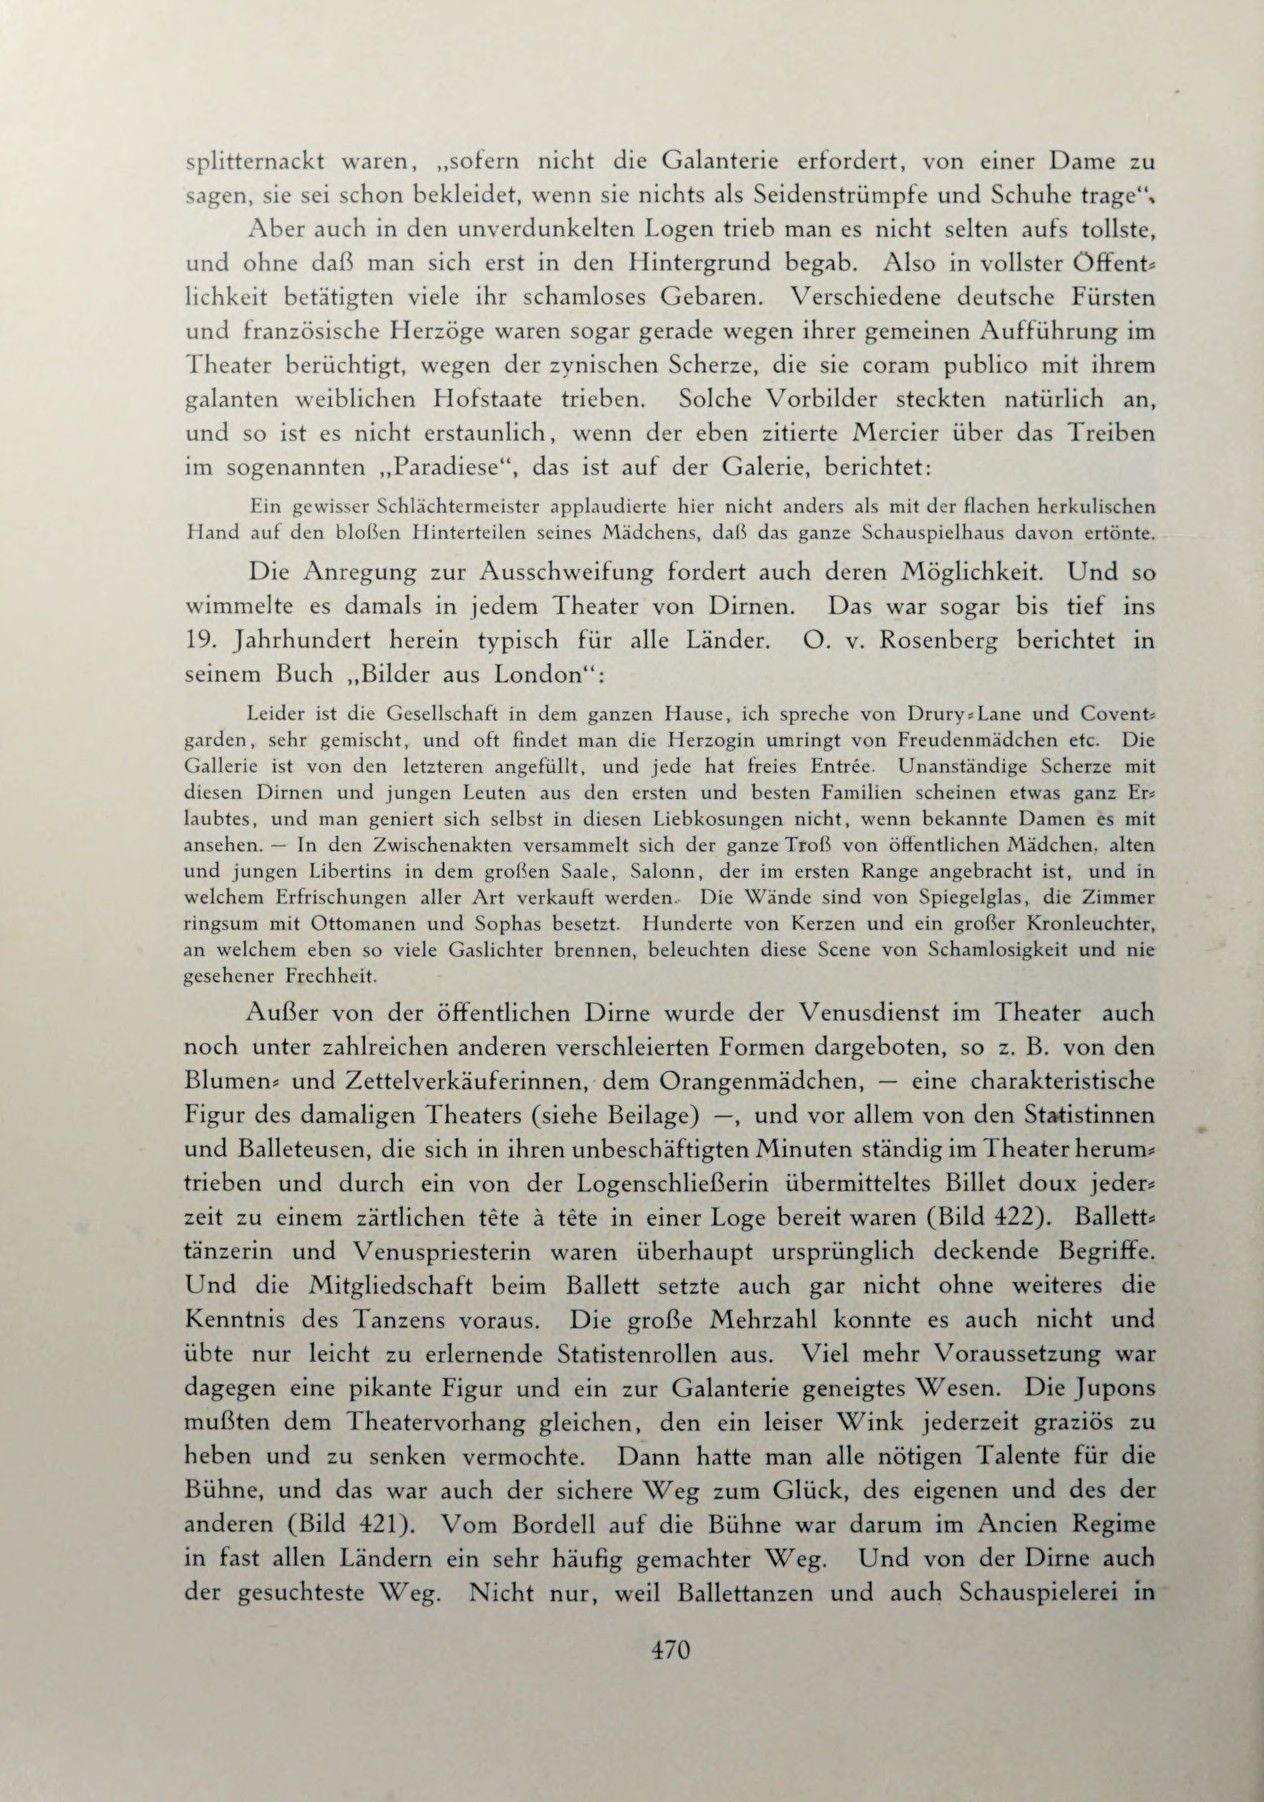 [Eduard Fuchs] Illustrierte Sittengeschichte vom Mittelalter bis zur Gegenwart: Bd. 2. and Ergänzungsband. Die galante Zeit [German] 673